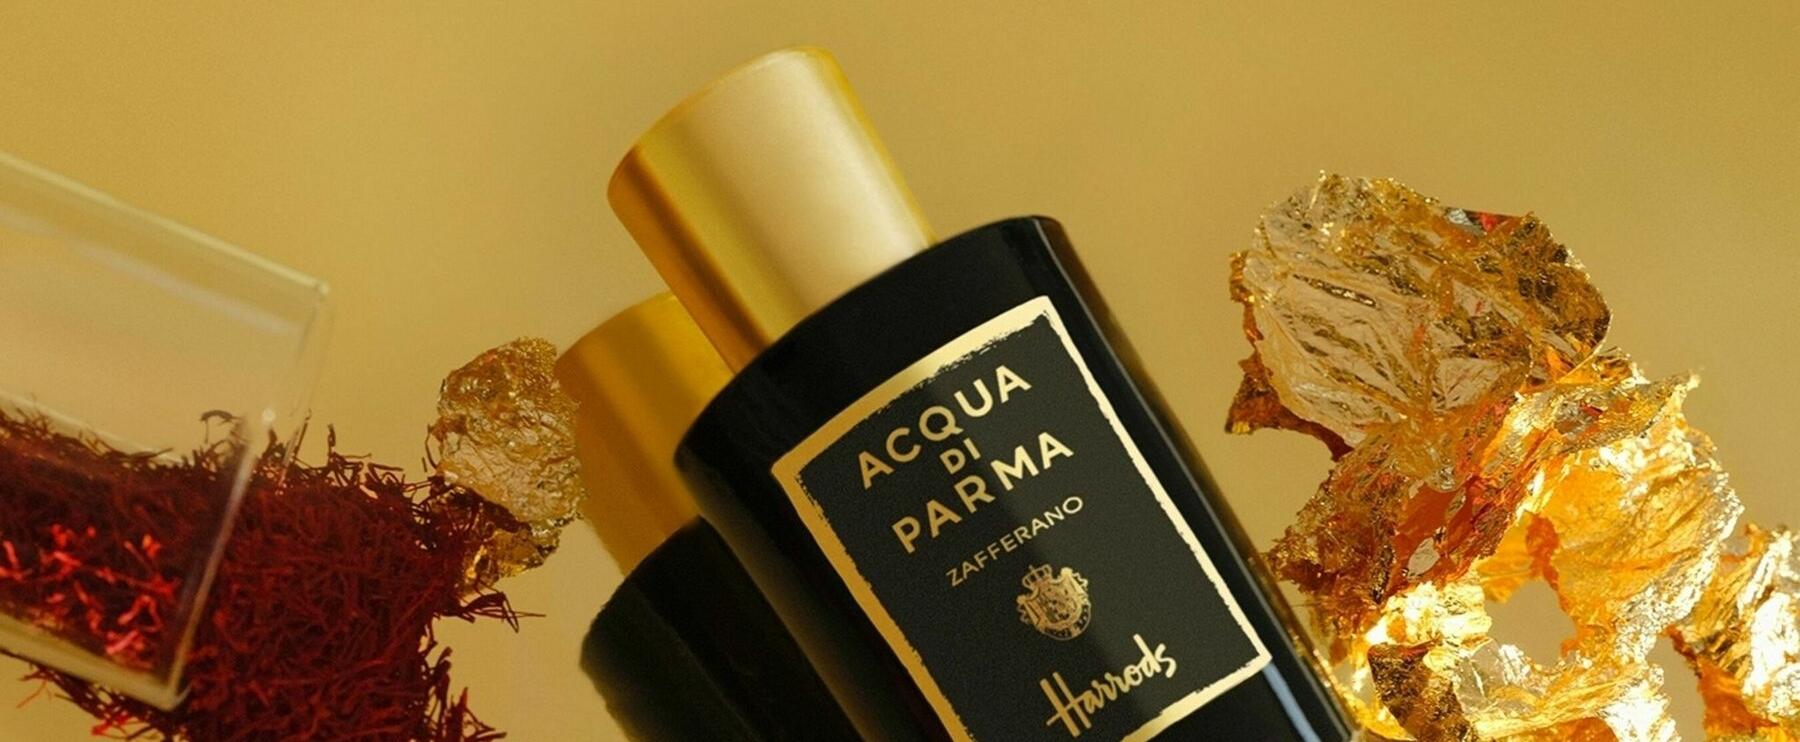 "Zafferano" - Acqua di Parma launches exclusive perfume for Harrods